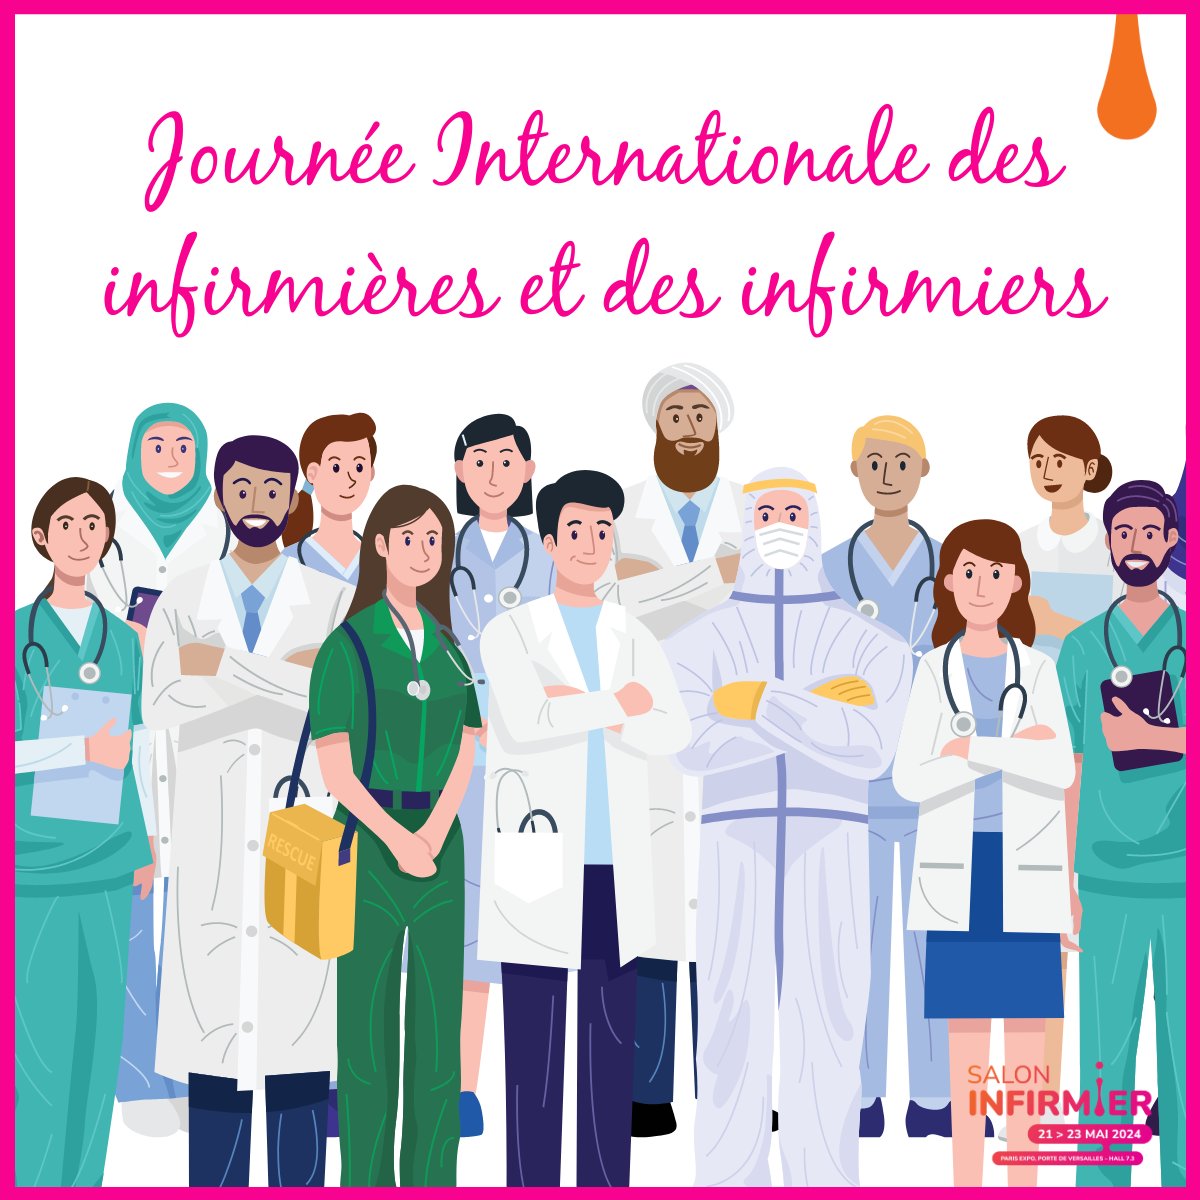 En cette la Journée Internationale des infirmières et des infirmiers, le Salon Infirmier souhaite rendre hommage à toutes les infirmières et infirmiers à travers le monde. Nous tenons également à saluer votre dévouement inébranlable au service de ceux qui en ont besoin.